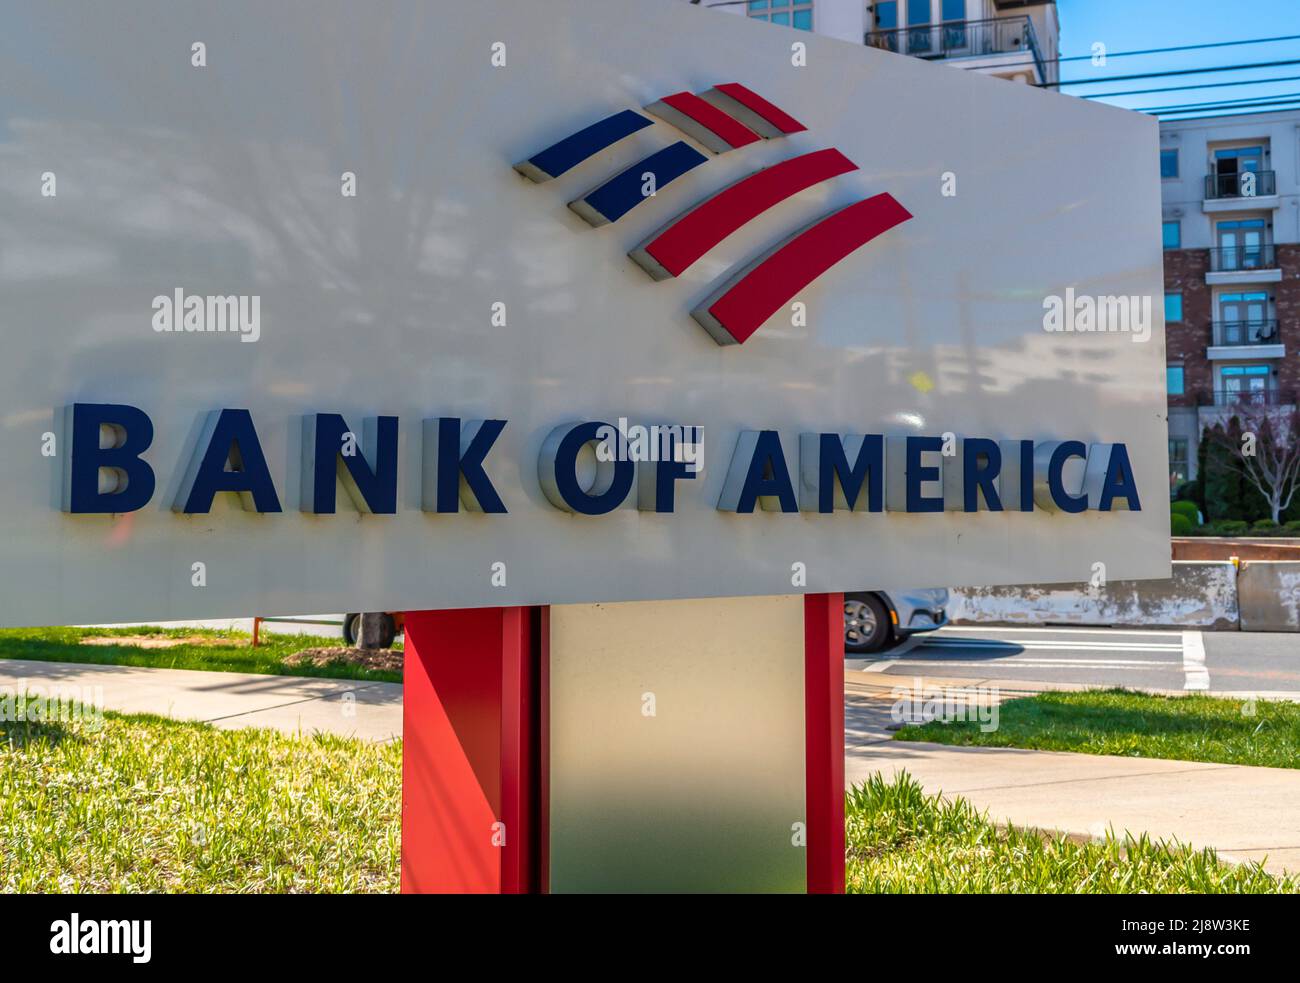 Extérieur, marque et logo « Bank of America » sur pied en rouge, blanc et bleu avec verdure et reflets par temps ensoleillé. Banque D'Images